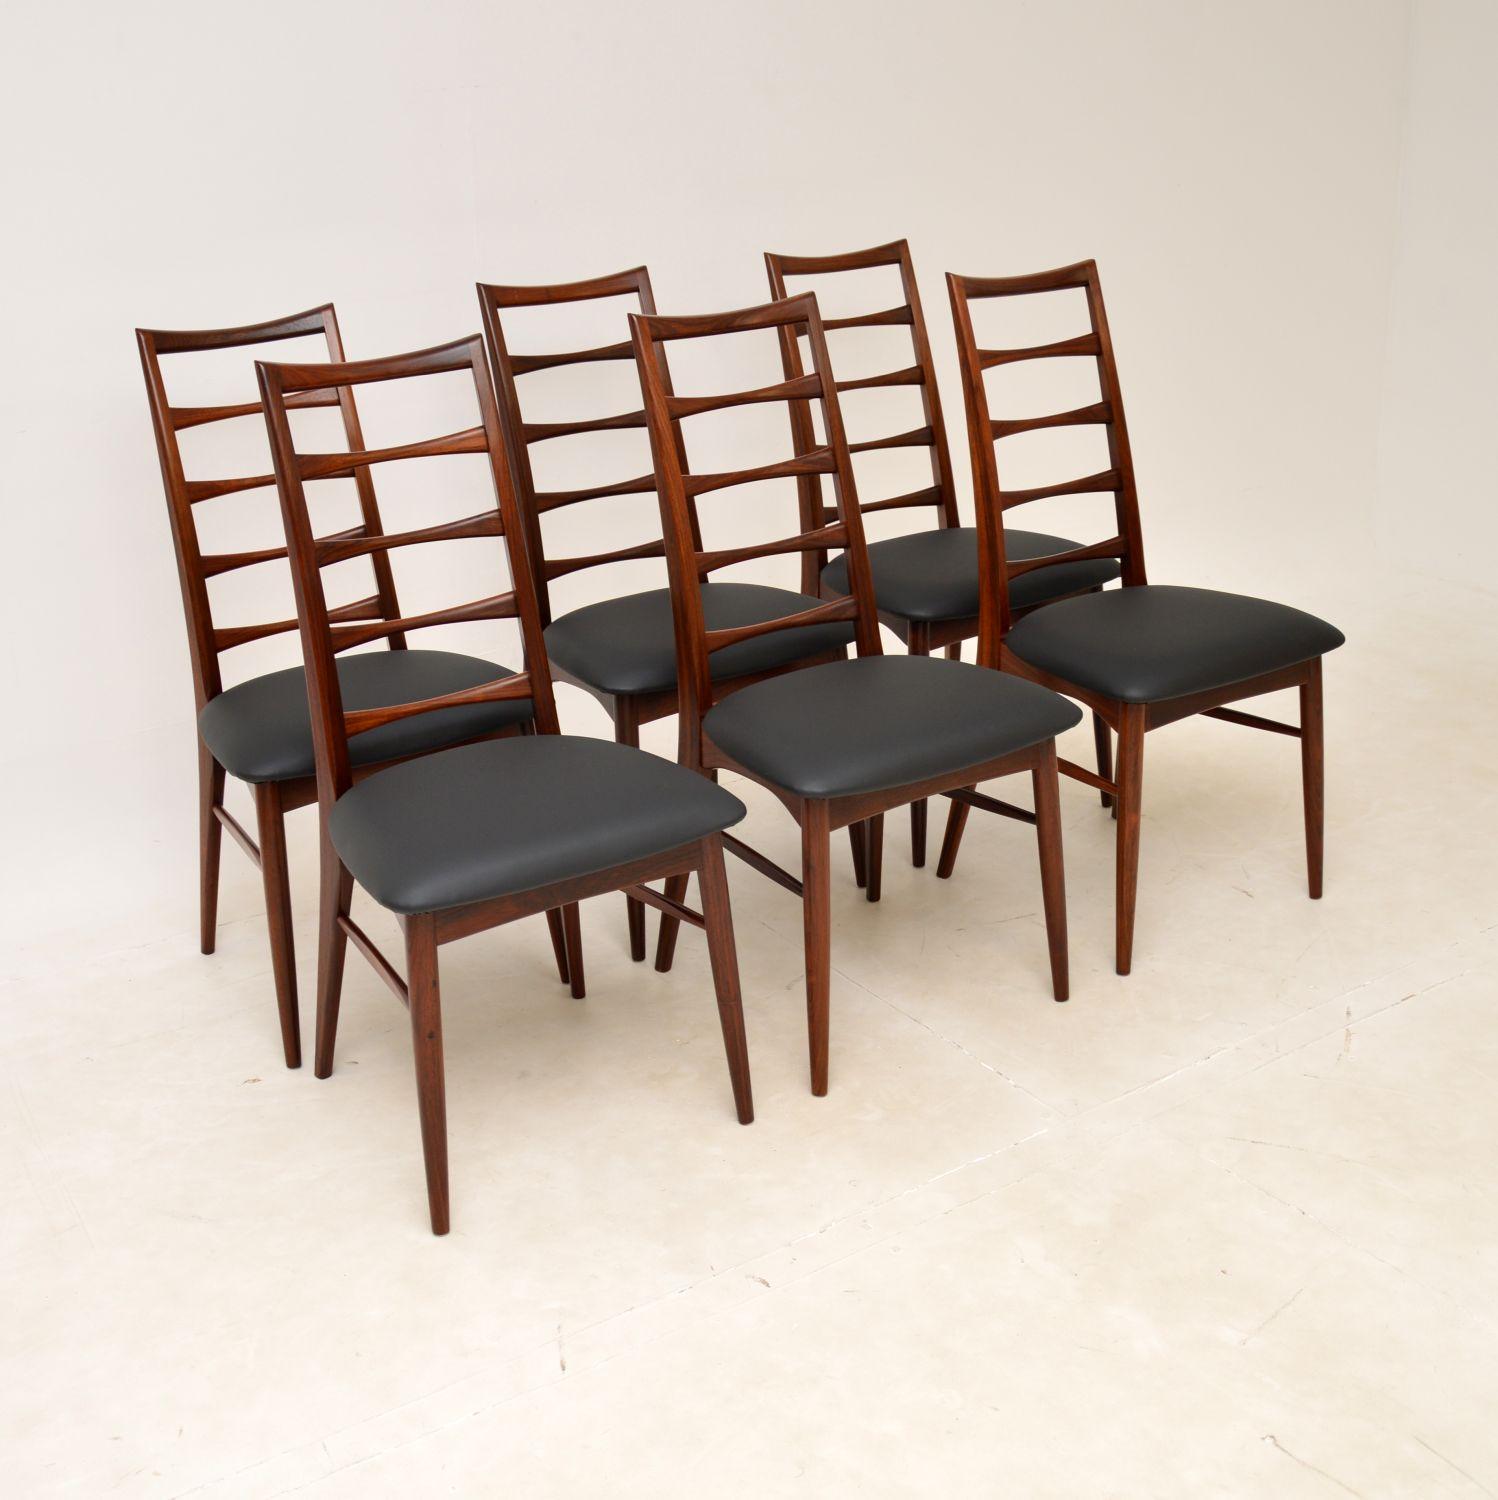 Ein äußerst stilvolles und seltenes Set von sechs dänischen Esszimmerstühlen. Sie wurden von Niels Koefoed entworfen und in den 1960er Jahren in Dänemark von Koefoed Hornslet hergestellt. Dieses Modell wird als 